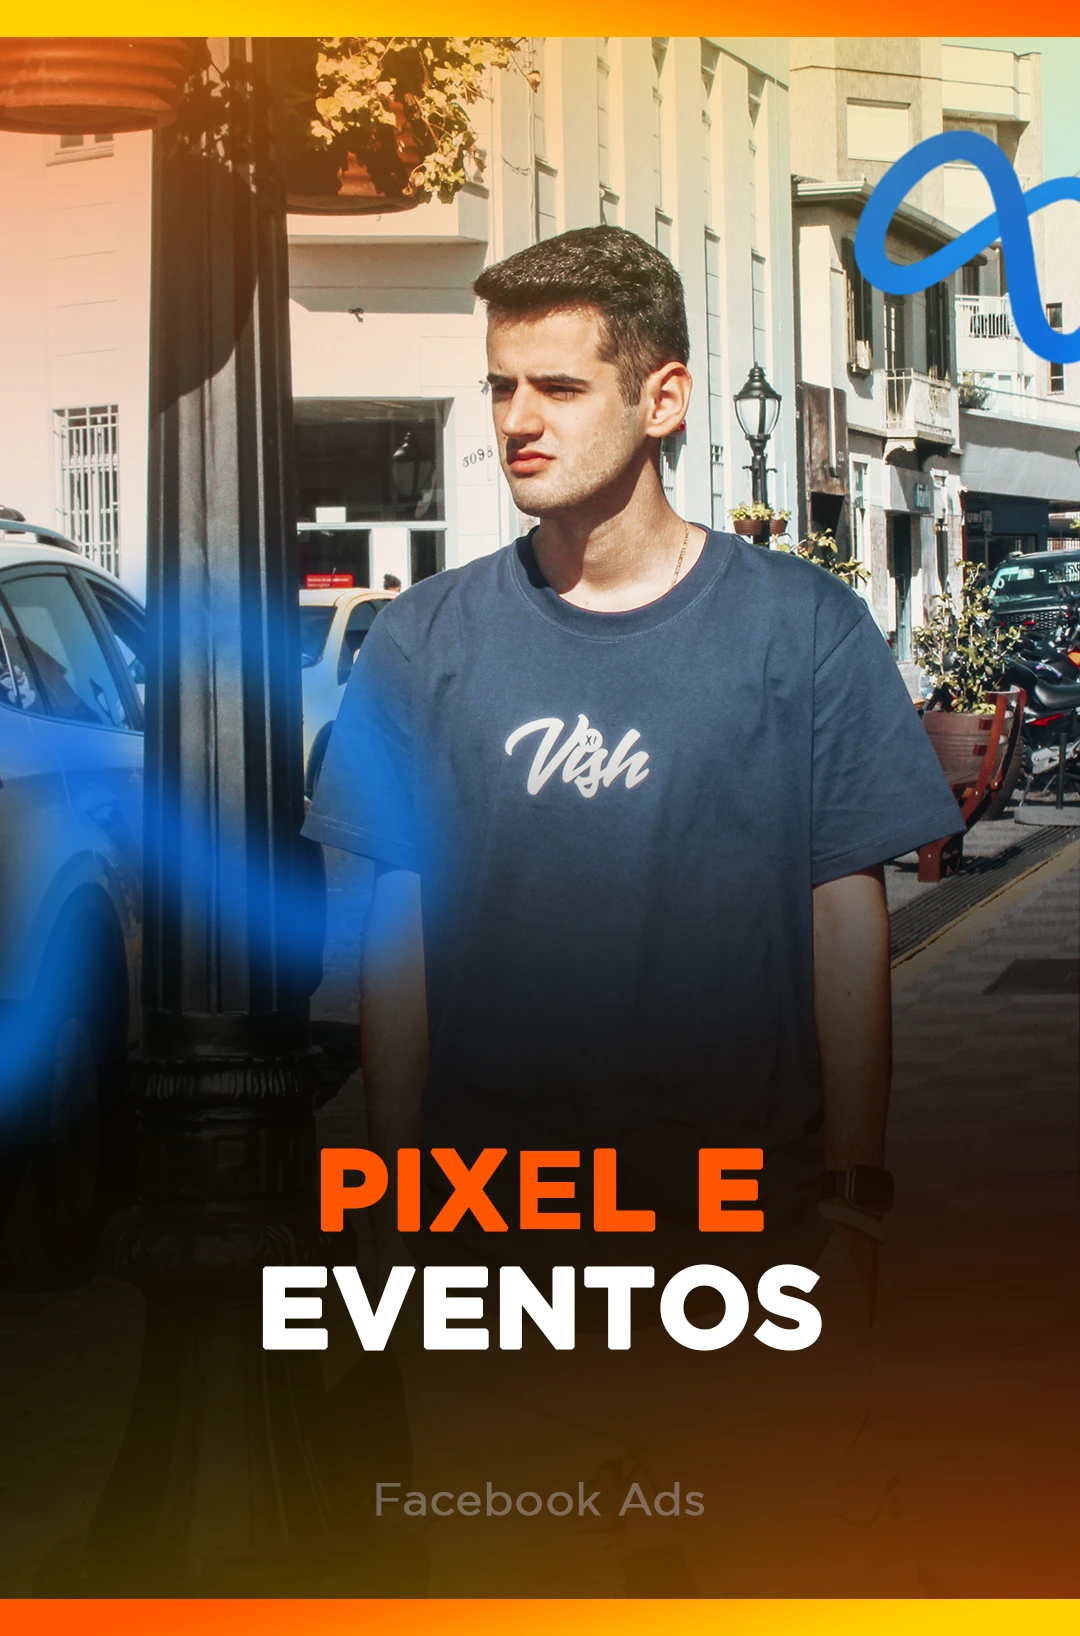 PIXEL E EVENTOS - FACE ADS